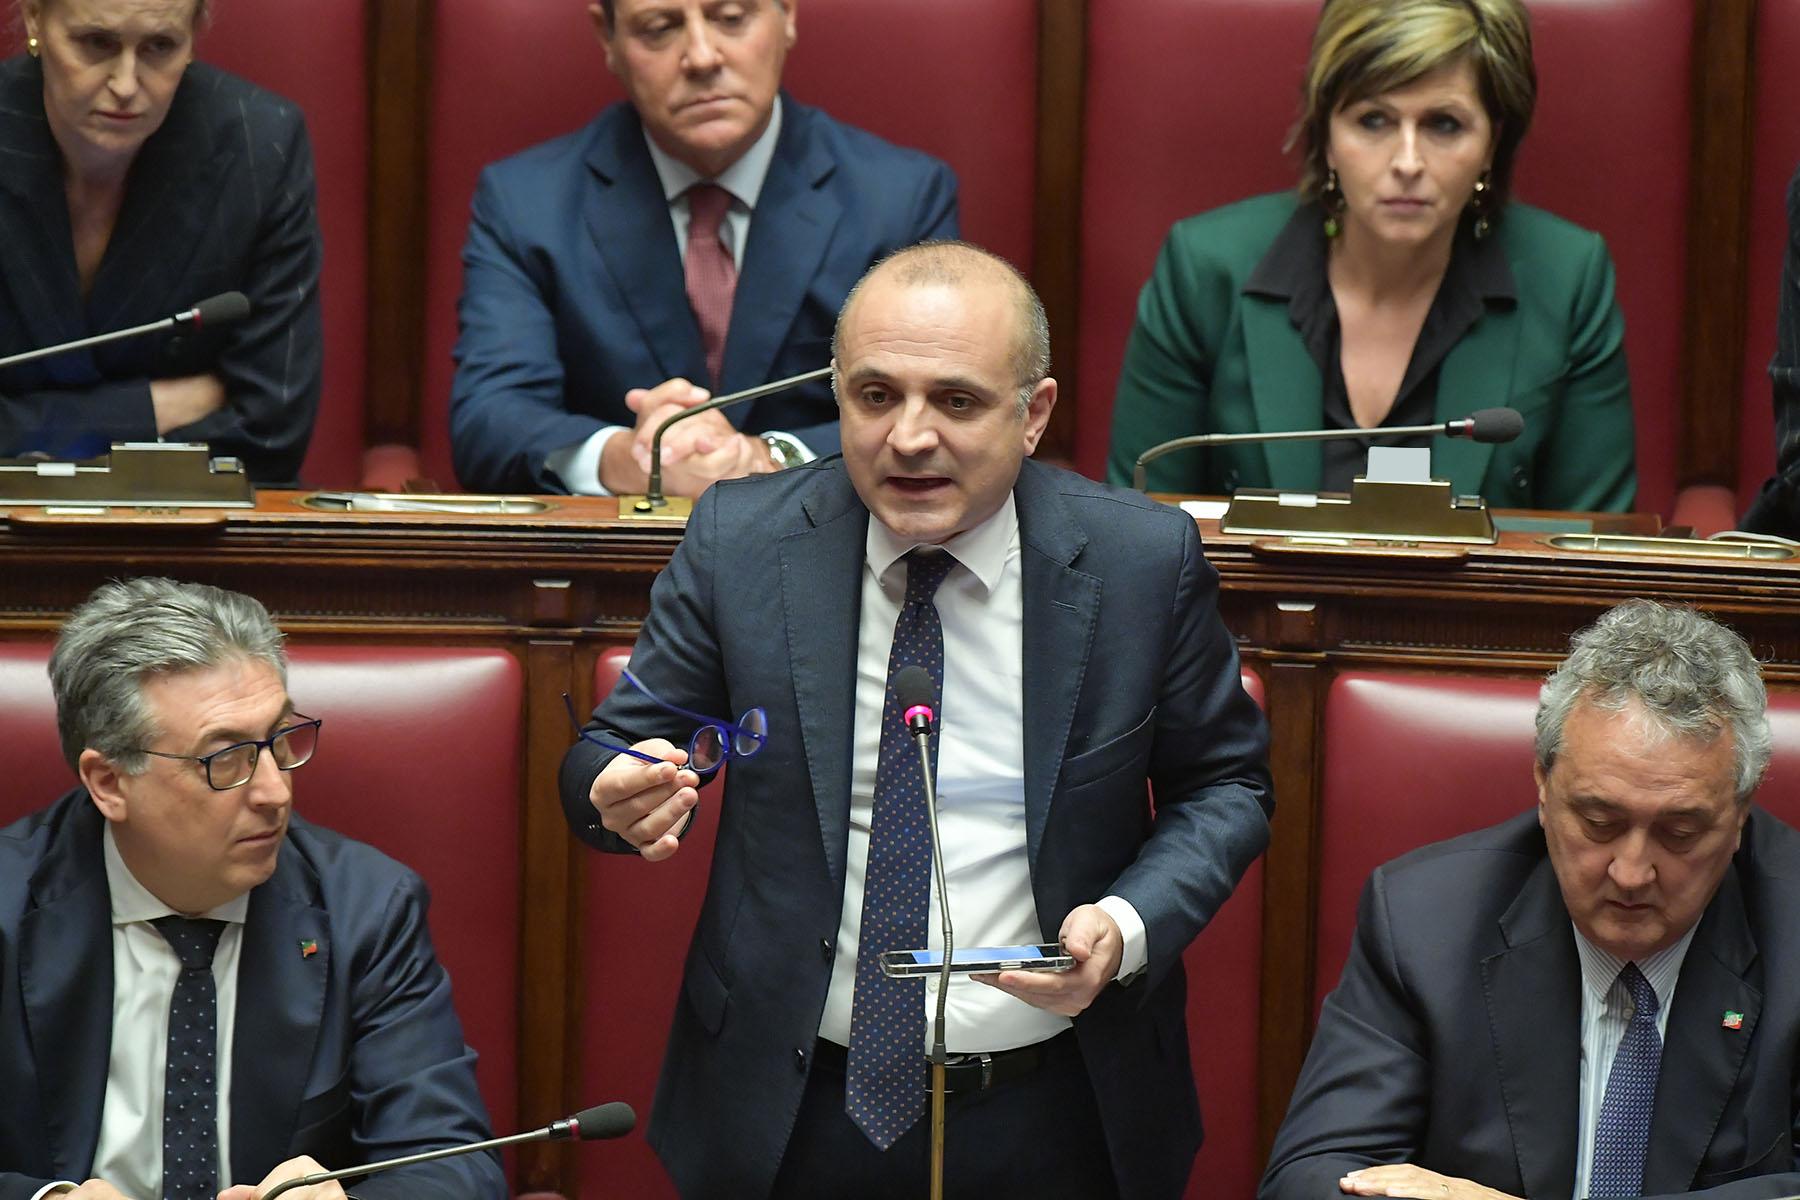 Intervento del deputato Mauro D'Attis